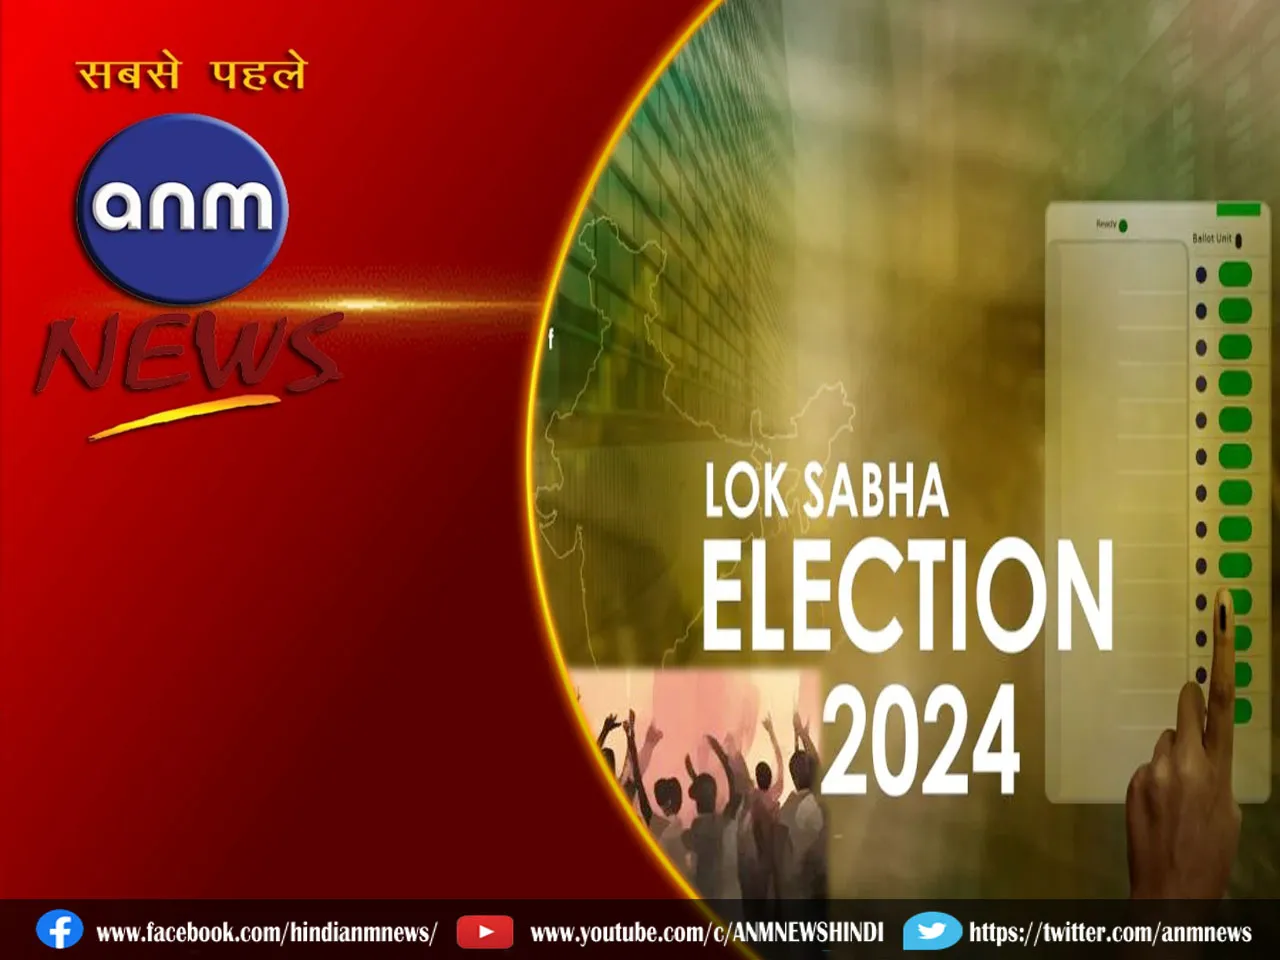 Lok Sabha Elections 2024 : हम भाजपा को 100 पार होने नहीं देंगे